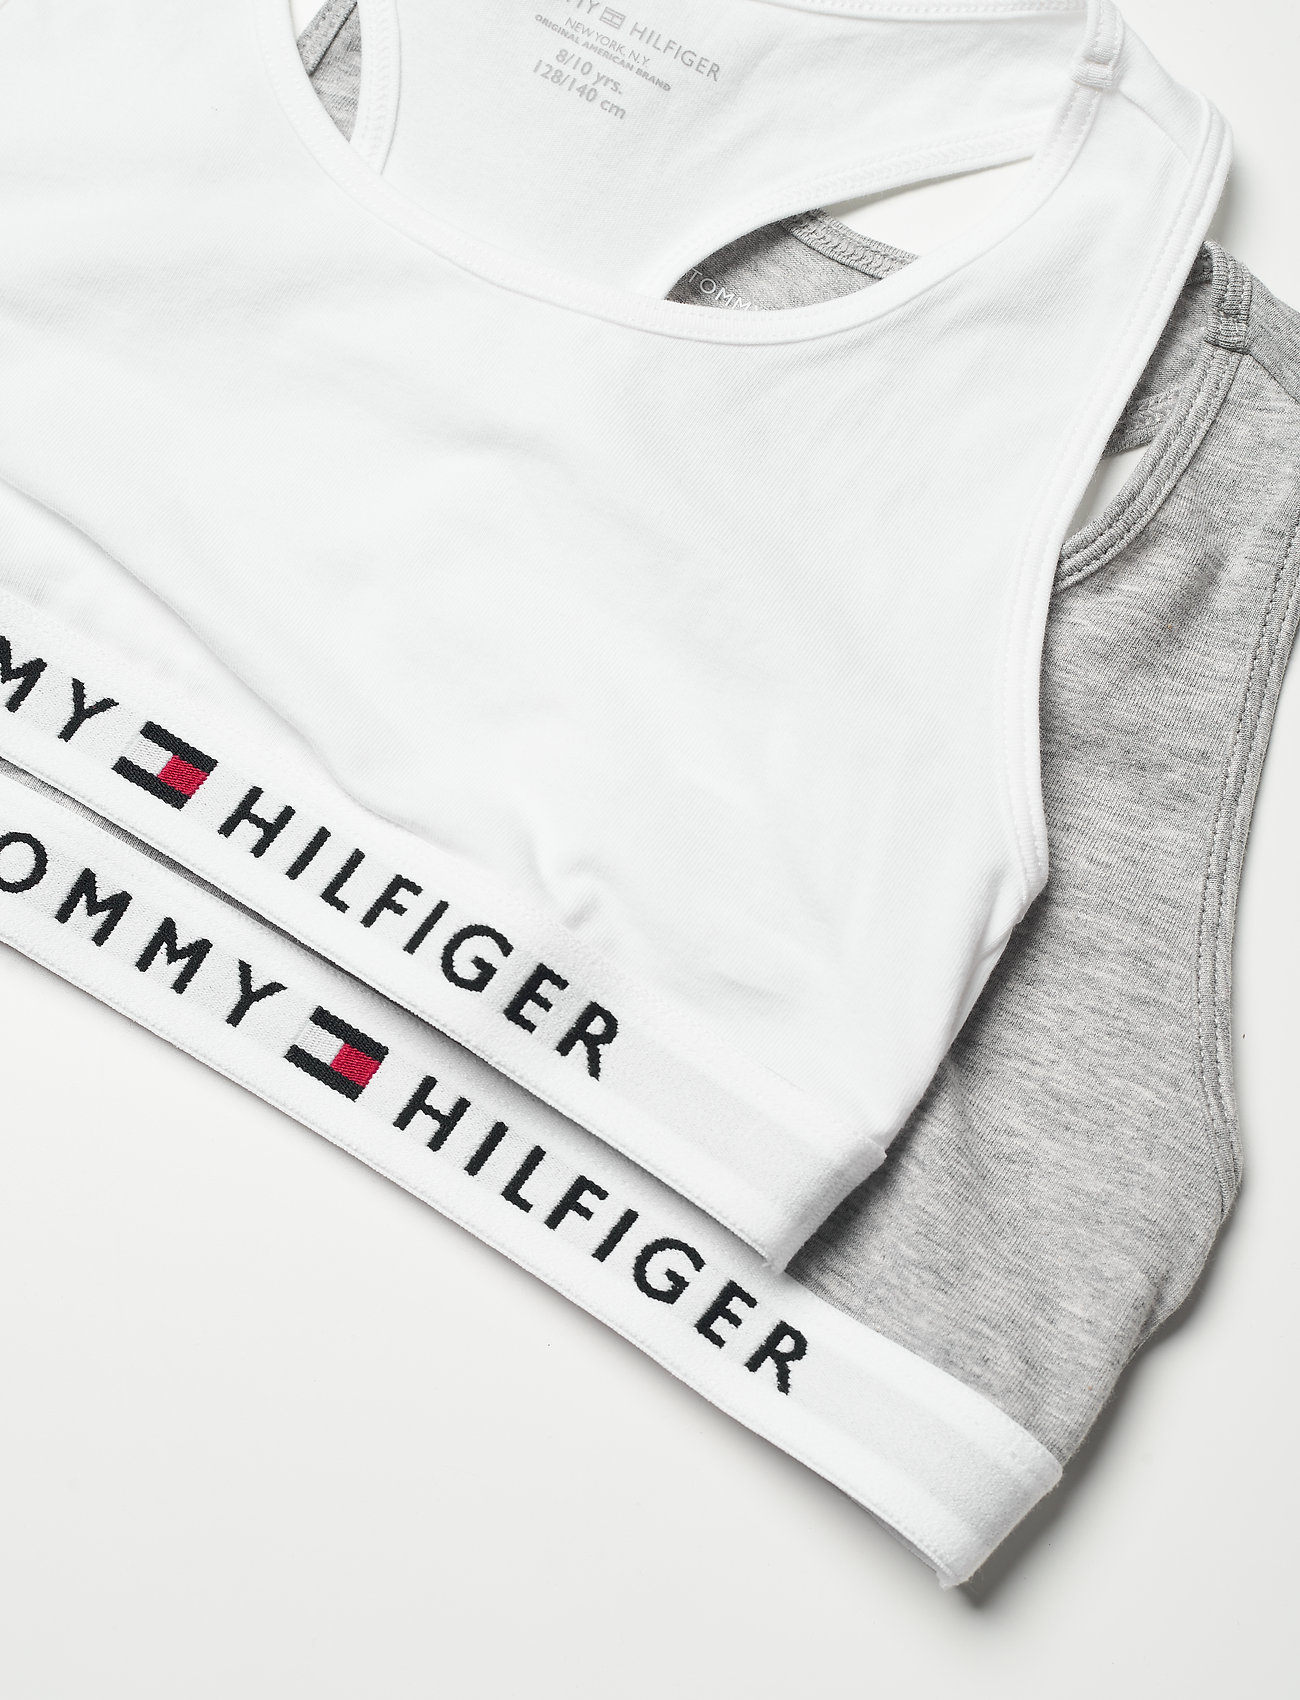 Tommy Hilfiger - 2P BRALETTE - laveste priser - mid grey heather/white - 1